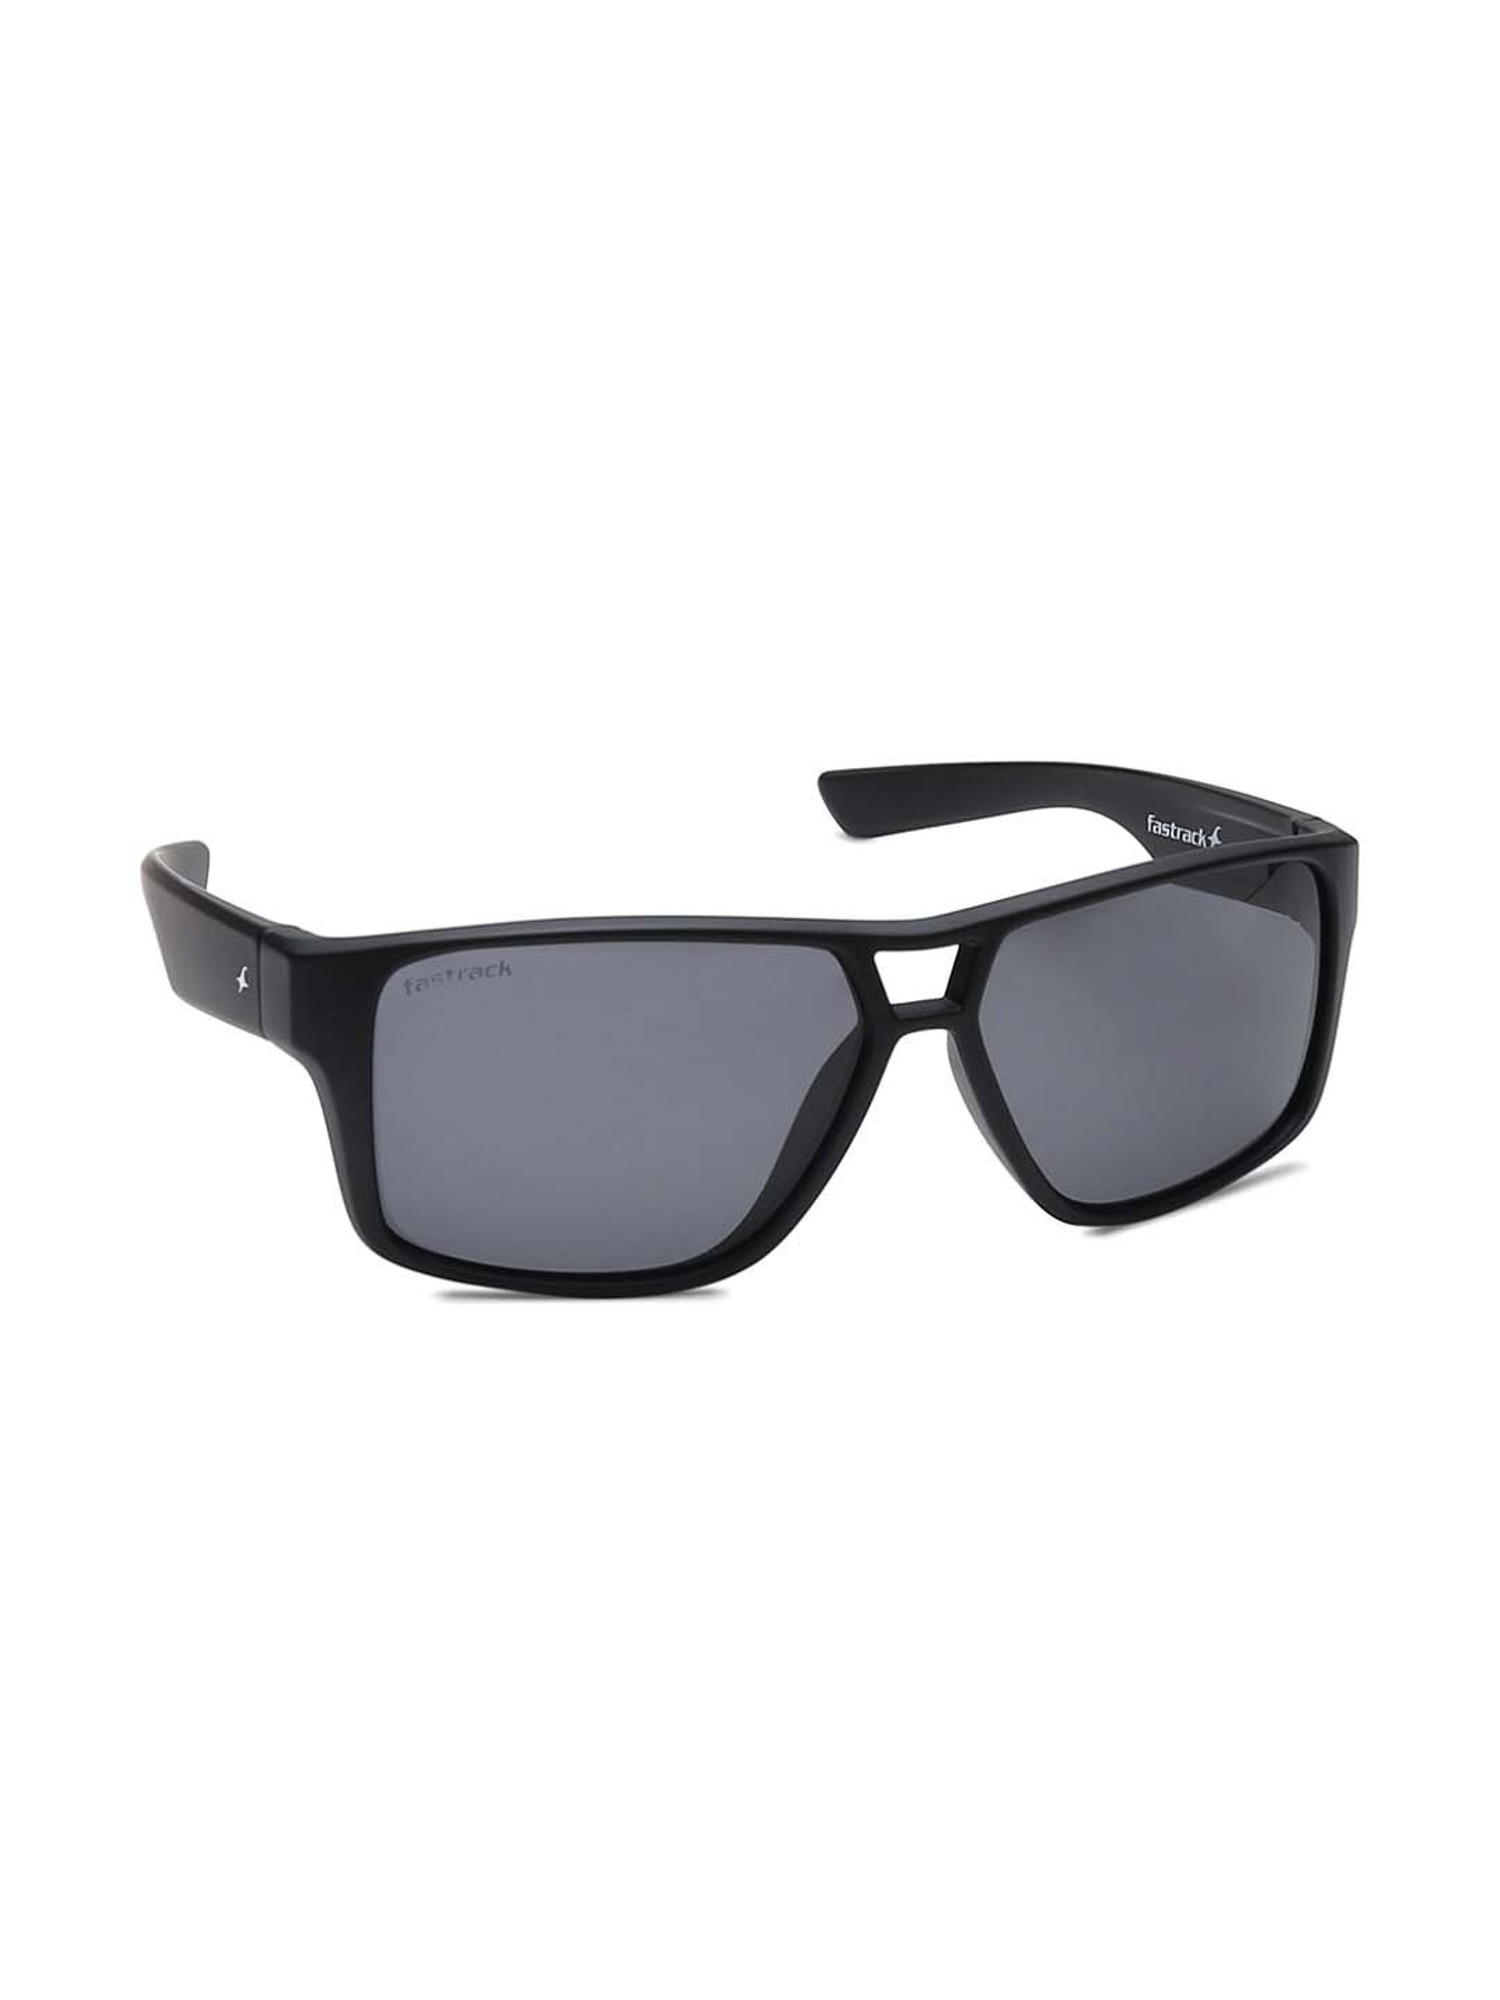 Fastrack Rectangular Stylish Sunglasses- Grey Free Size